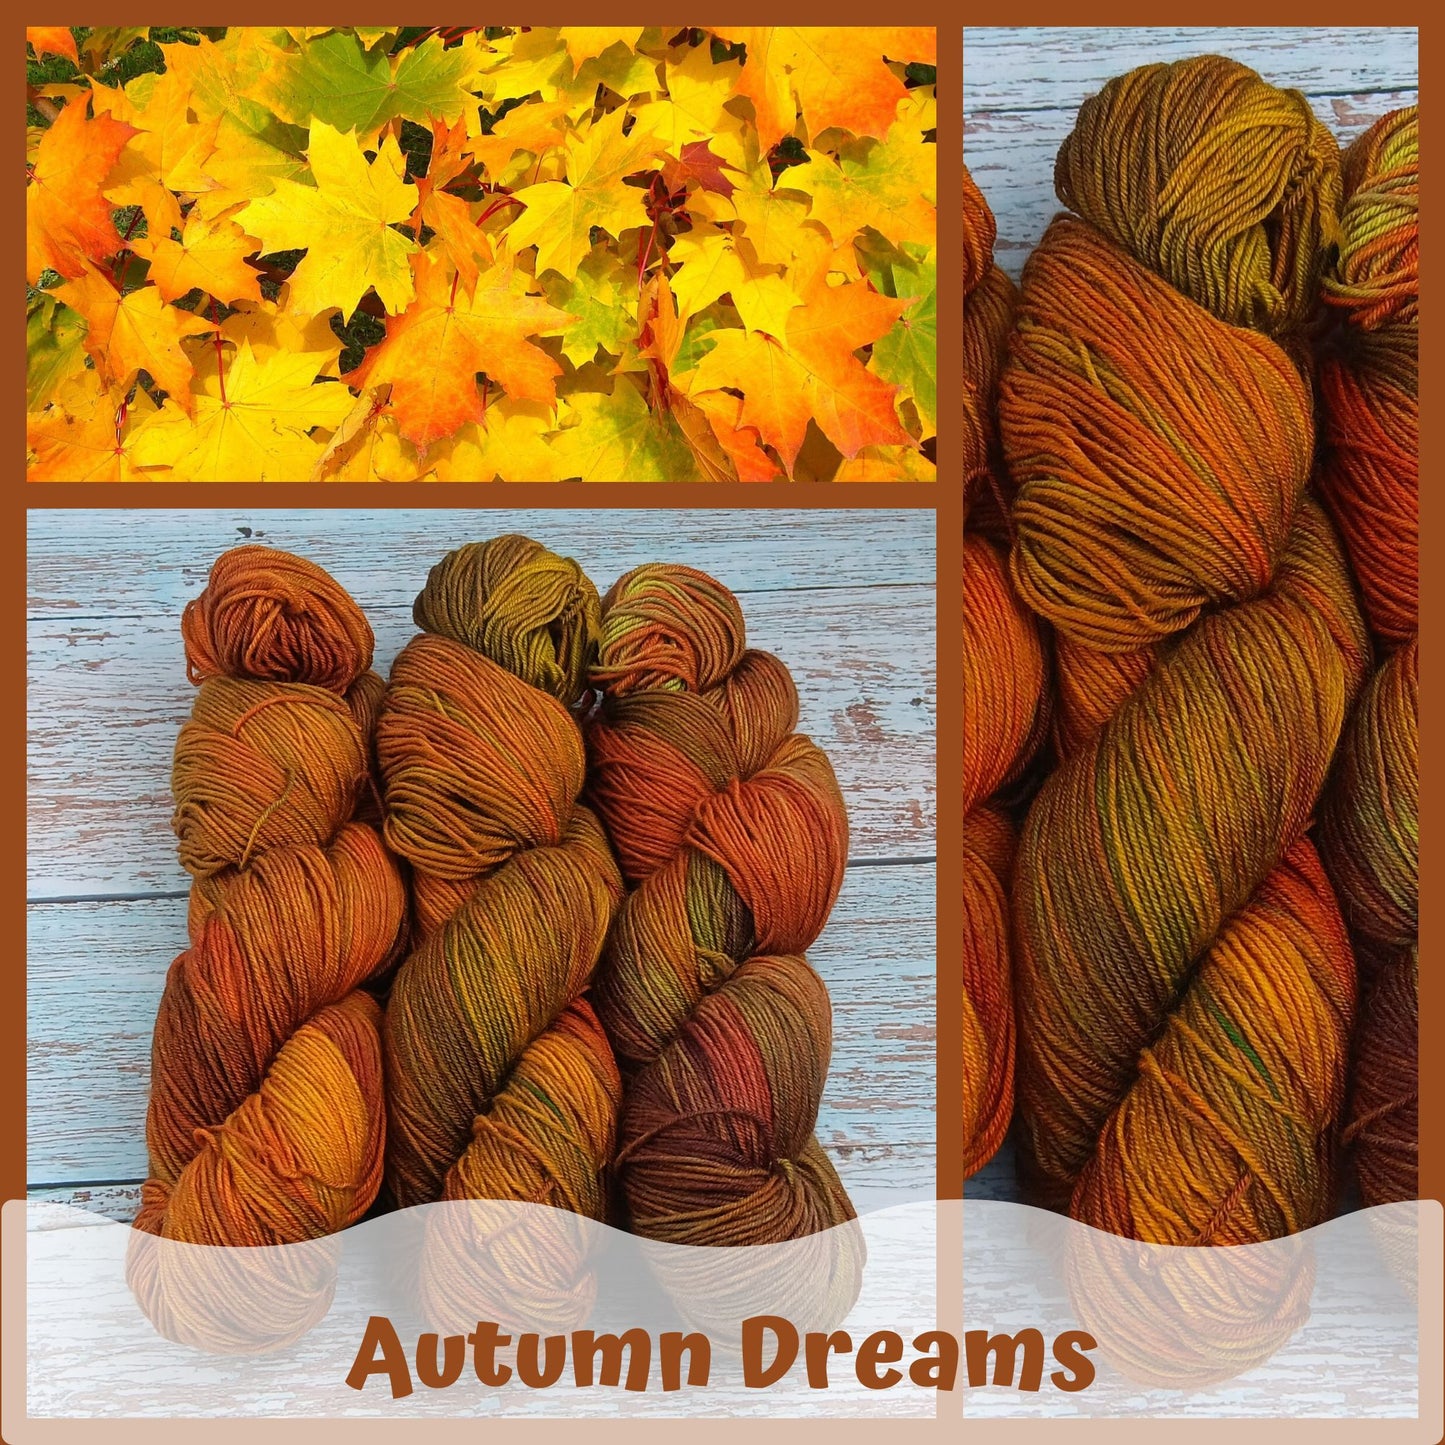 Autumn Dreams - Chickadee Fingering/Sock - Merino/Nylon - Ready to ship